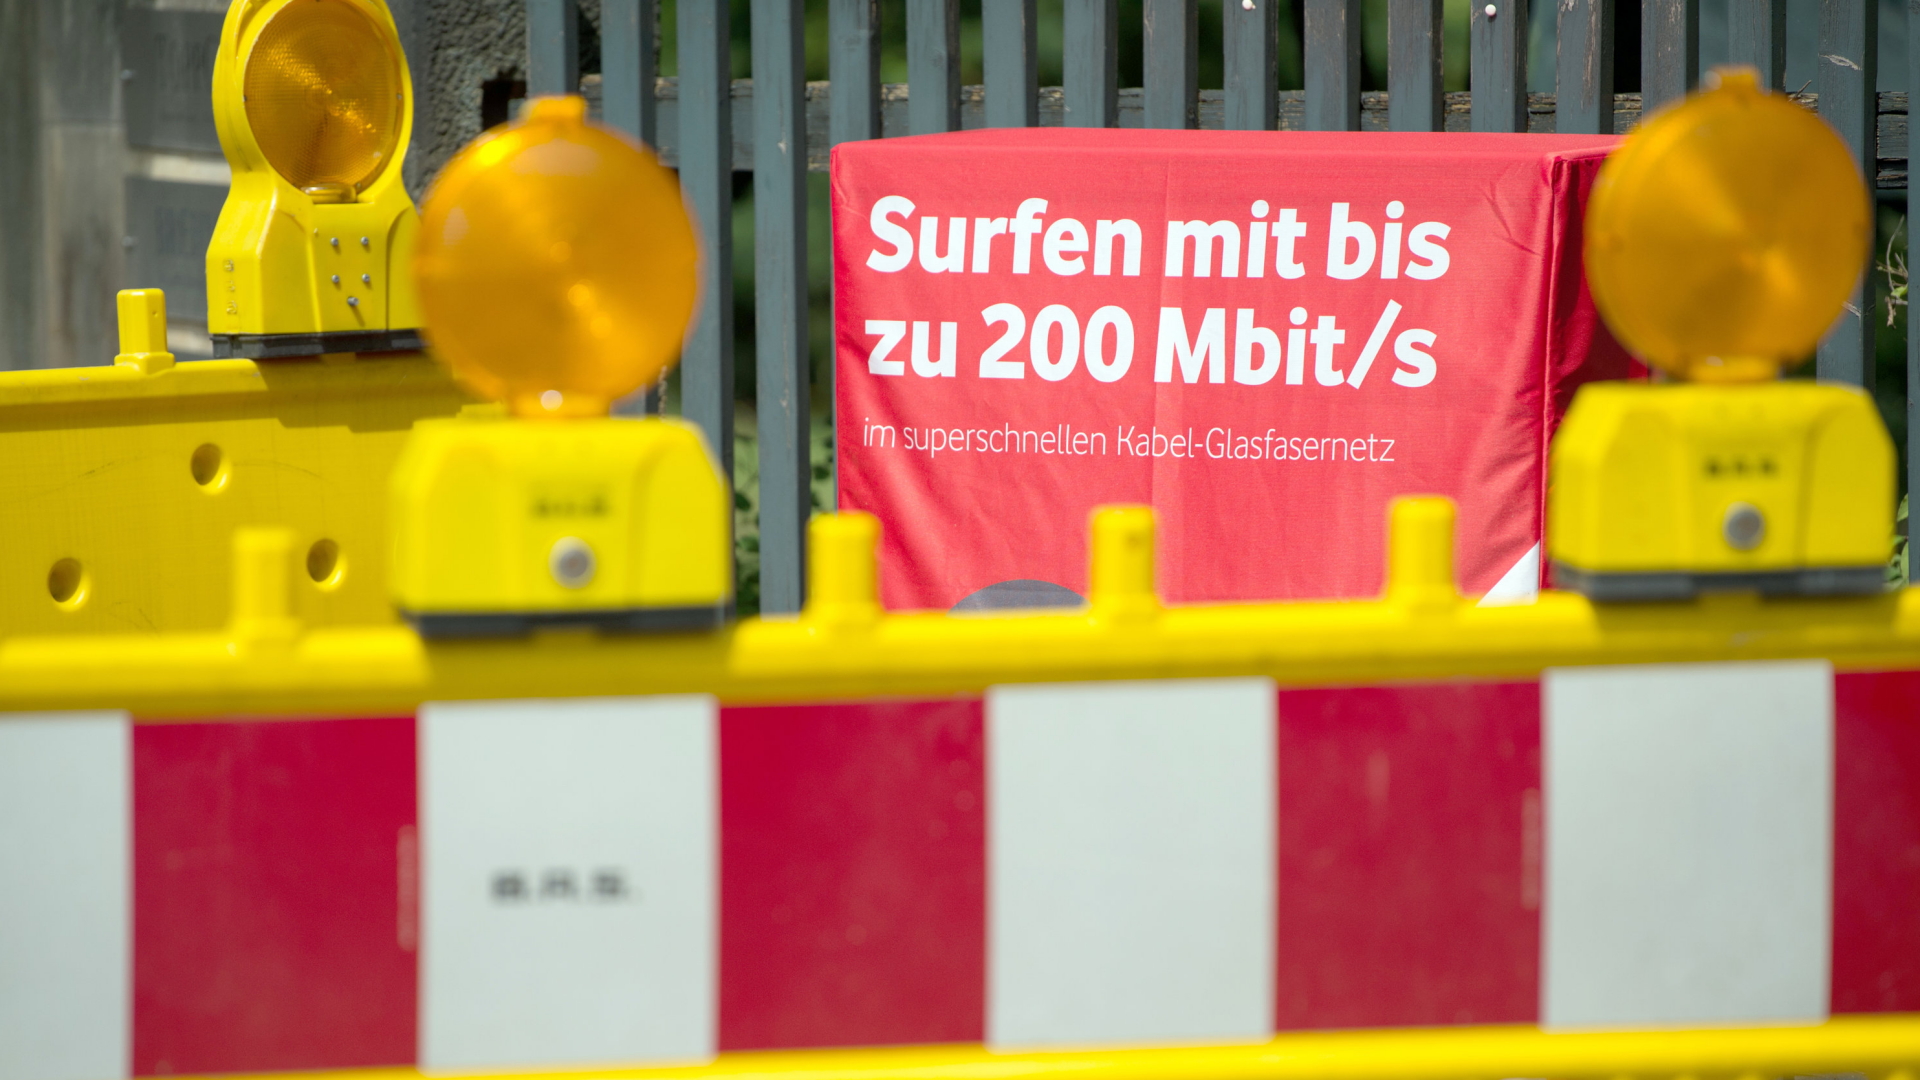 Bundesnetzagentur: Internet seringkali lebih lambat dari yang dijanjikan